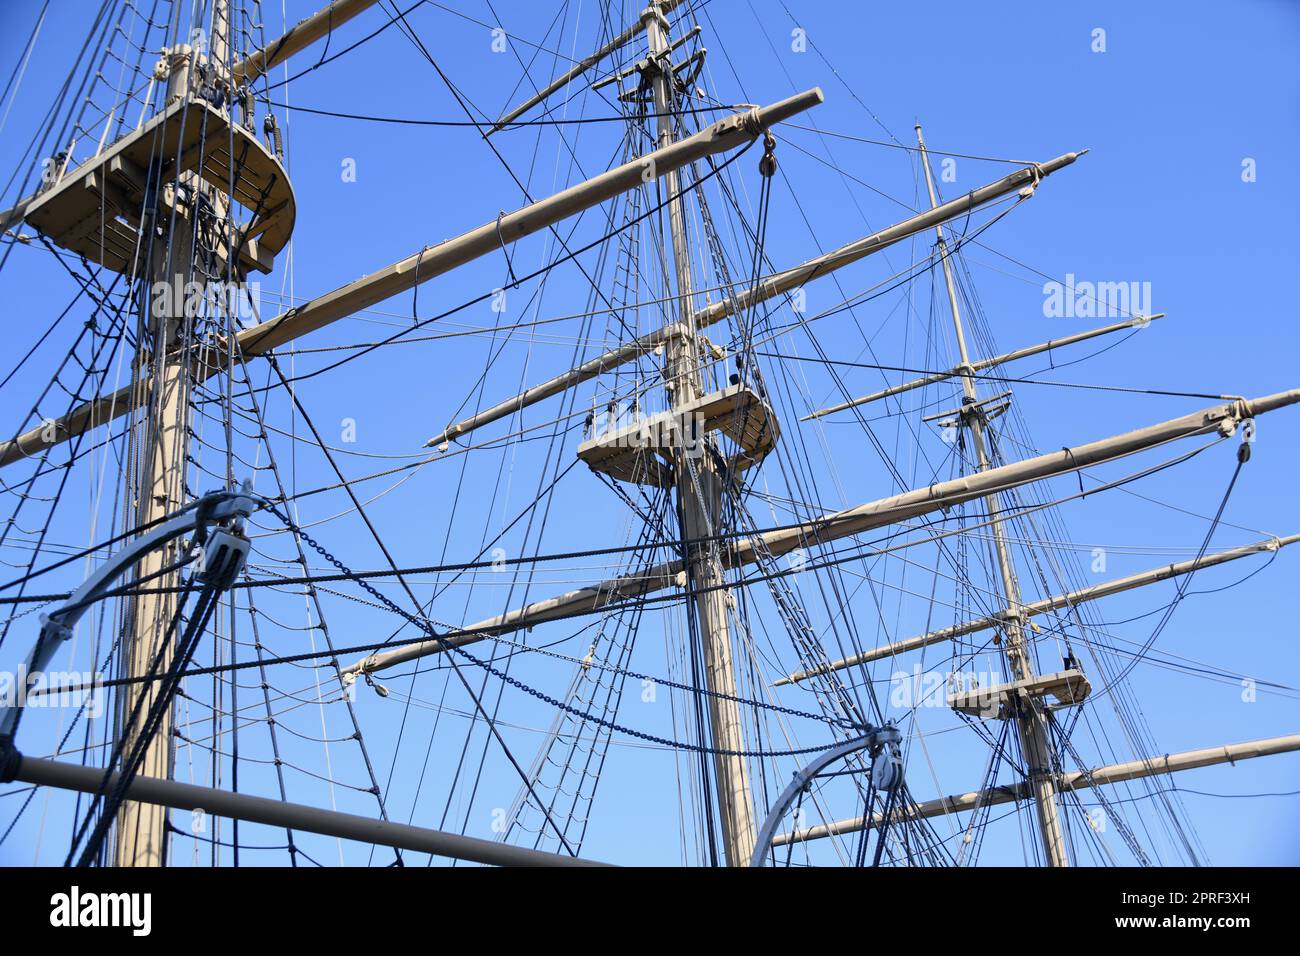 Un voilier de 3 mâts est un grand navire. Les trois maîtres sont souvent utilisés comme navire de formation ou à des fins touristiques. Banque D'Images